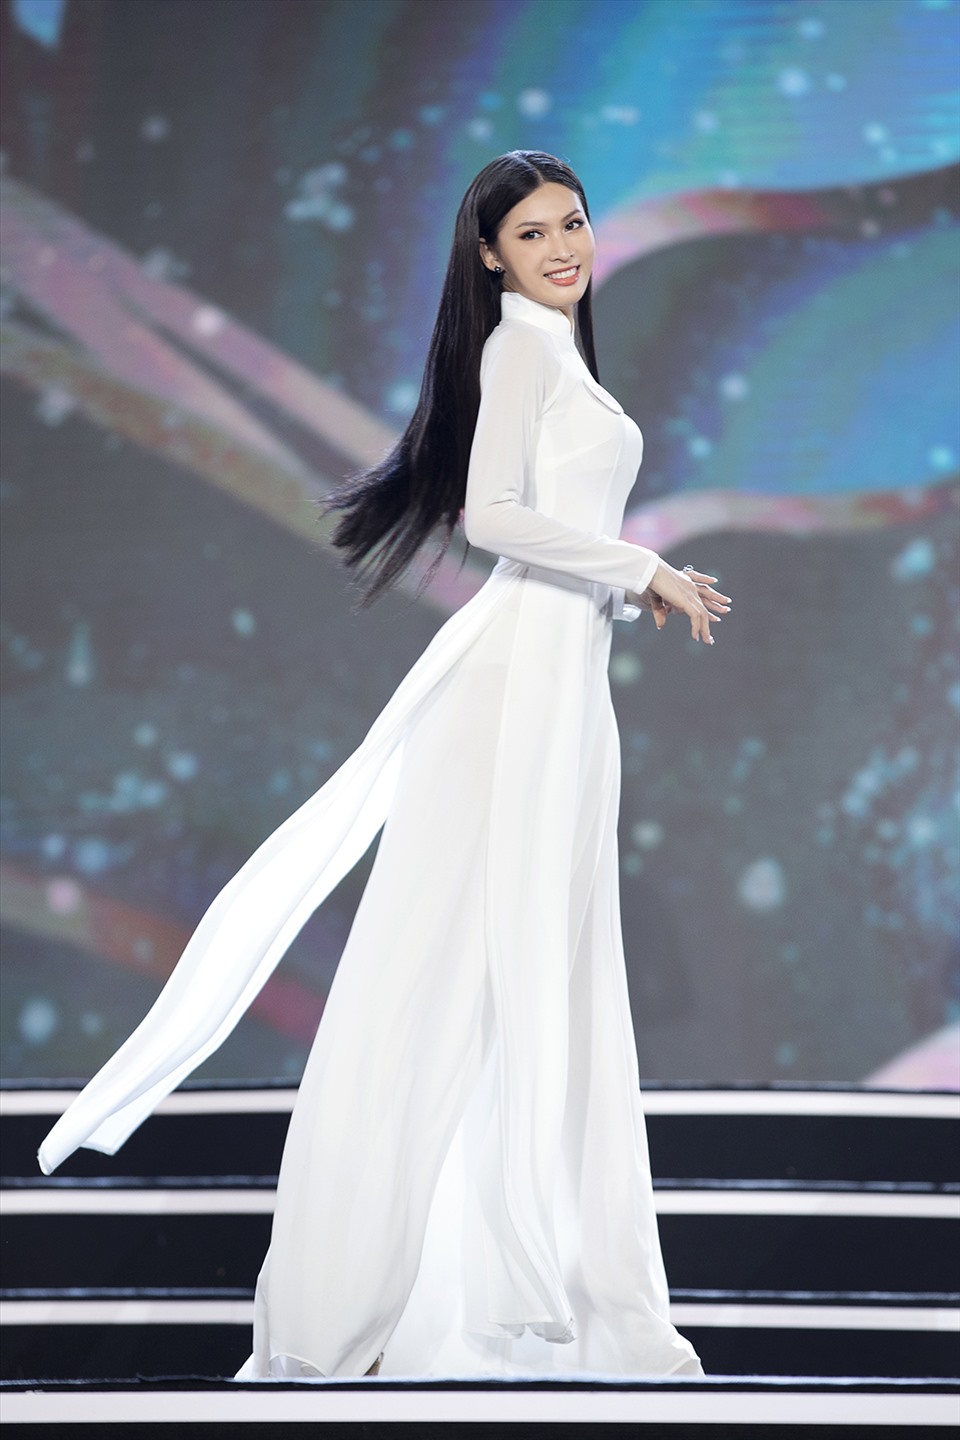 Ngọc Thảo cũng được nhận xét có nhiều nét tương đồng với Hoa hậu Tiểu Vy. Với những phần thể hiển bản thân và ngày càng nổi bật, Ngọc Thảo hoàn toàn có thể tự tin việc giành một vị trí trong top 5 tại chung kết Hoa hậu Việt Nam 2020. Ảnh: Kiếng Cận.